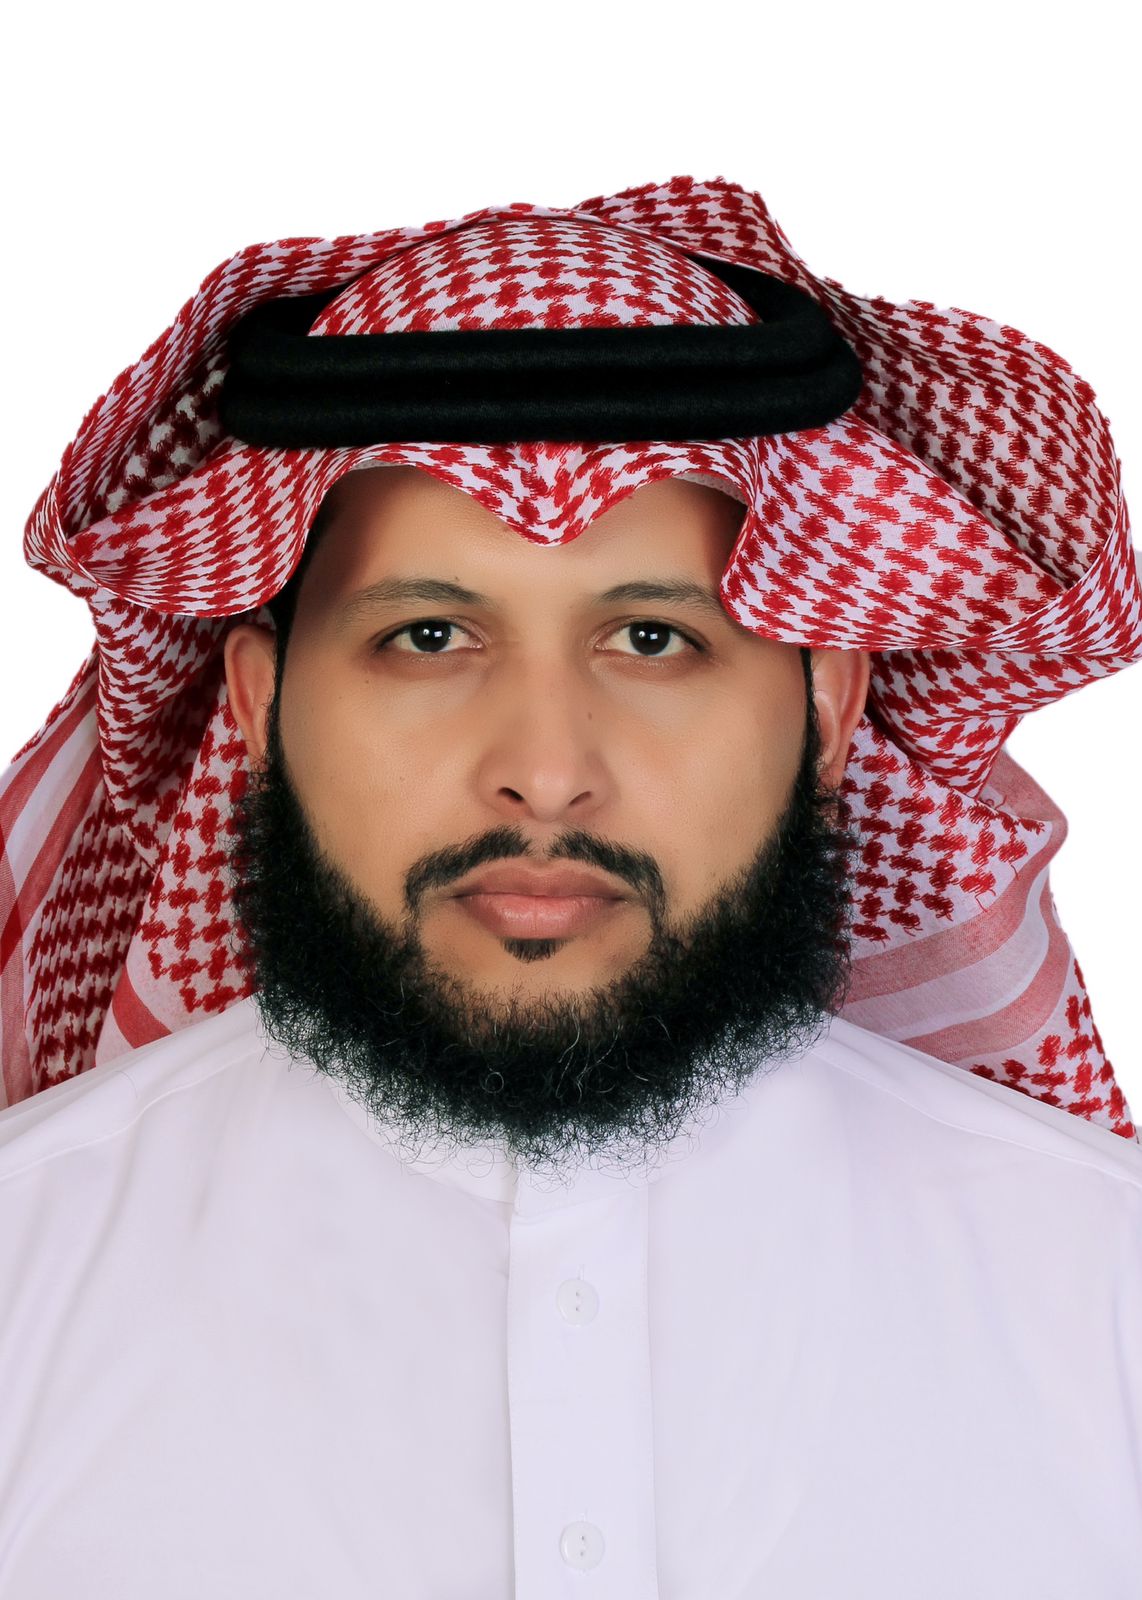 د. خالد بن فالح جلال السرحاني  